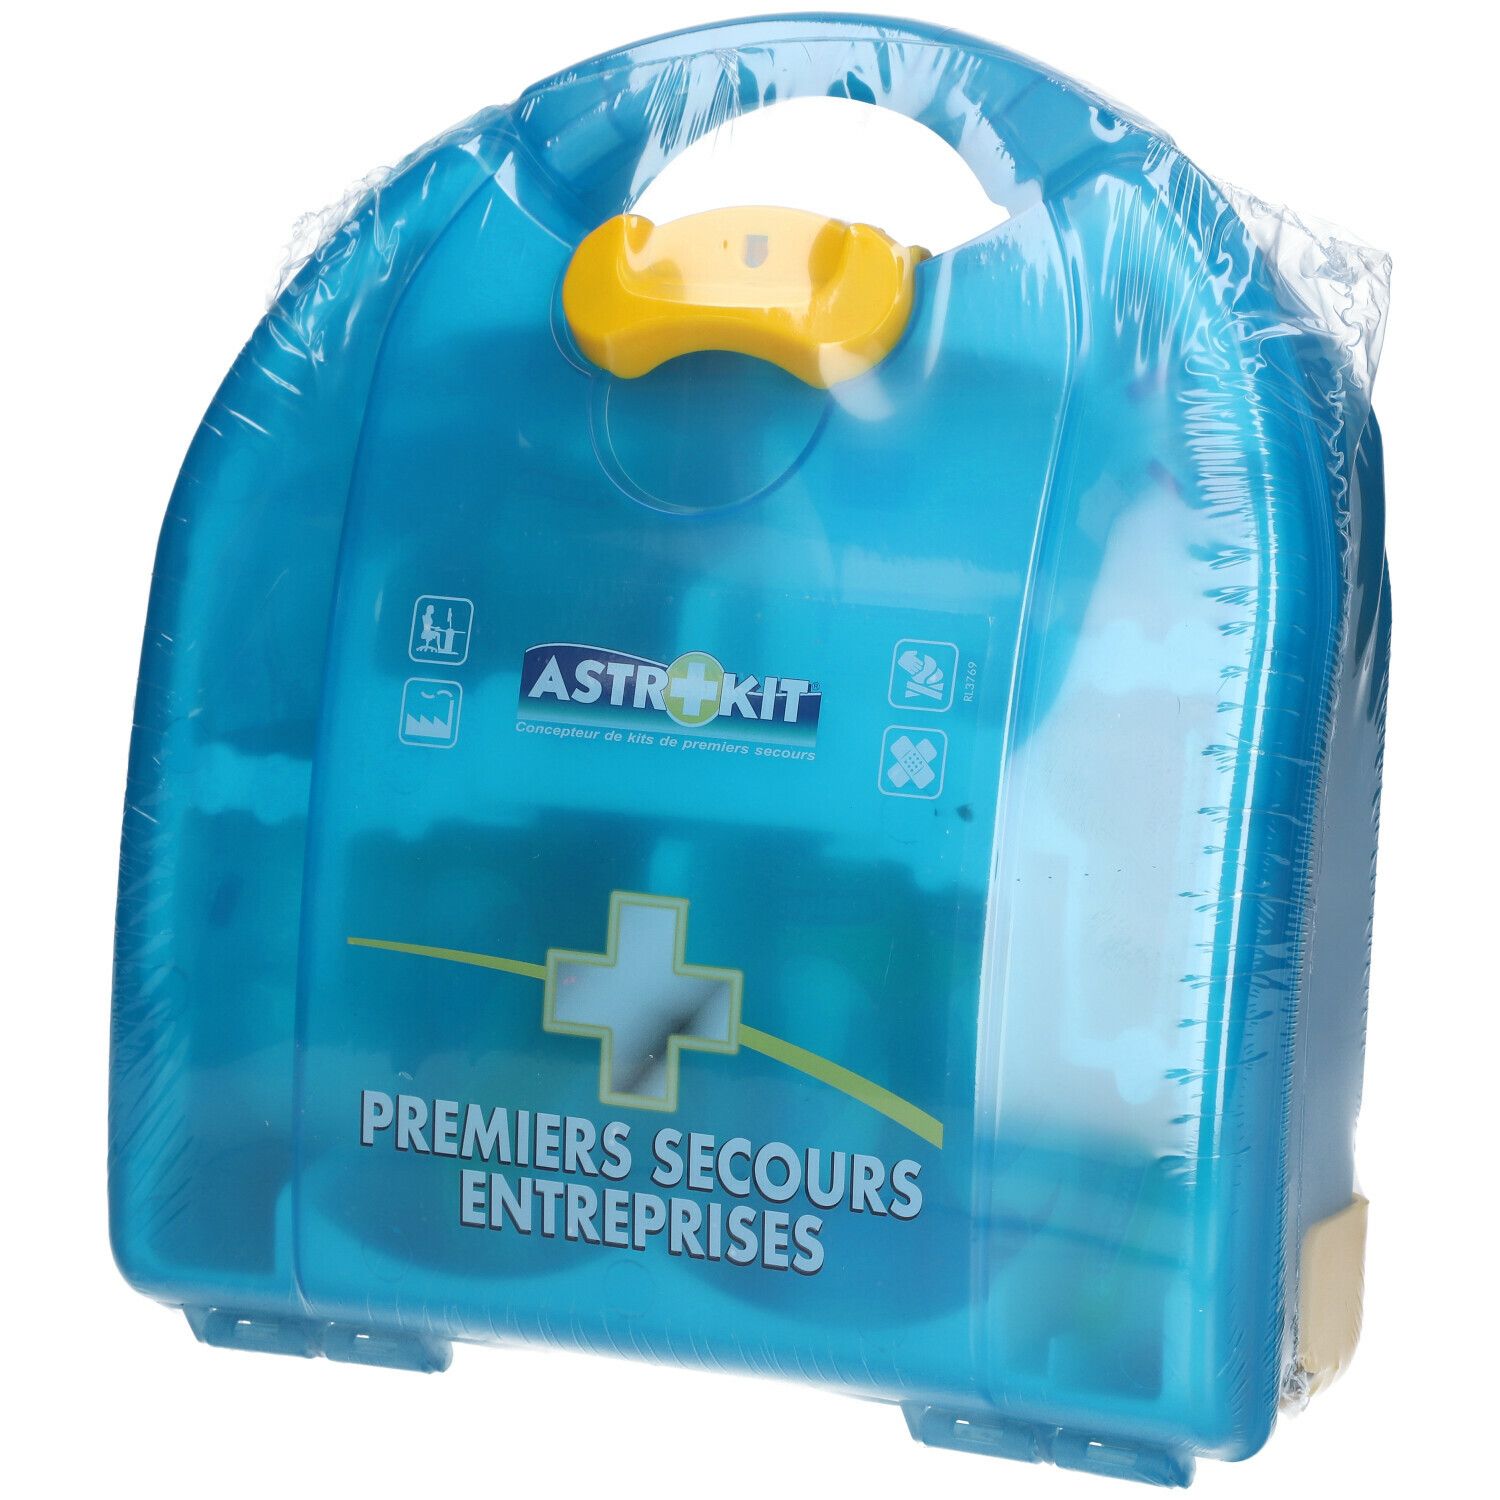 Astrokit® Kit Mezzo de Premiers Secours Entreprises